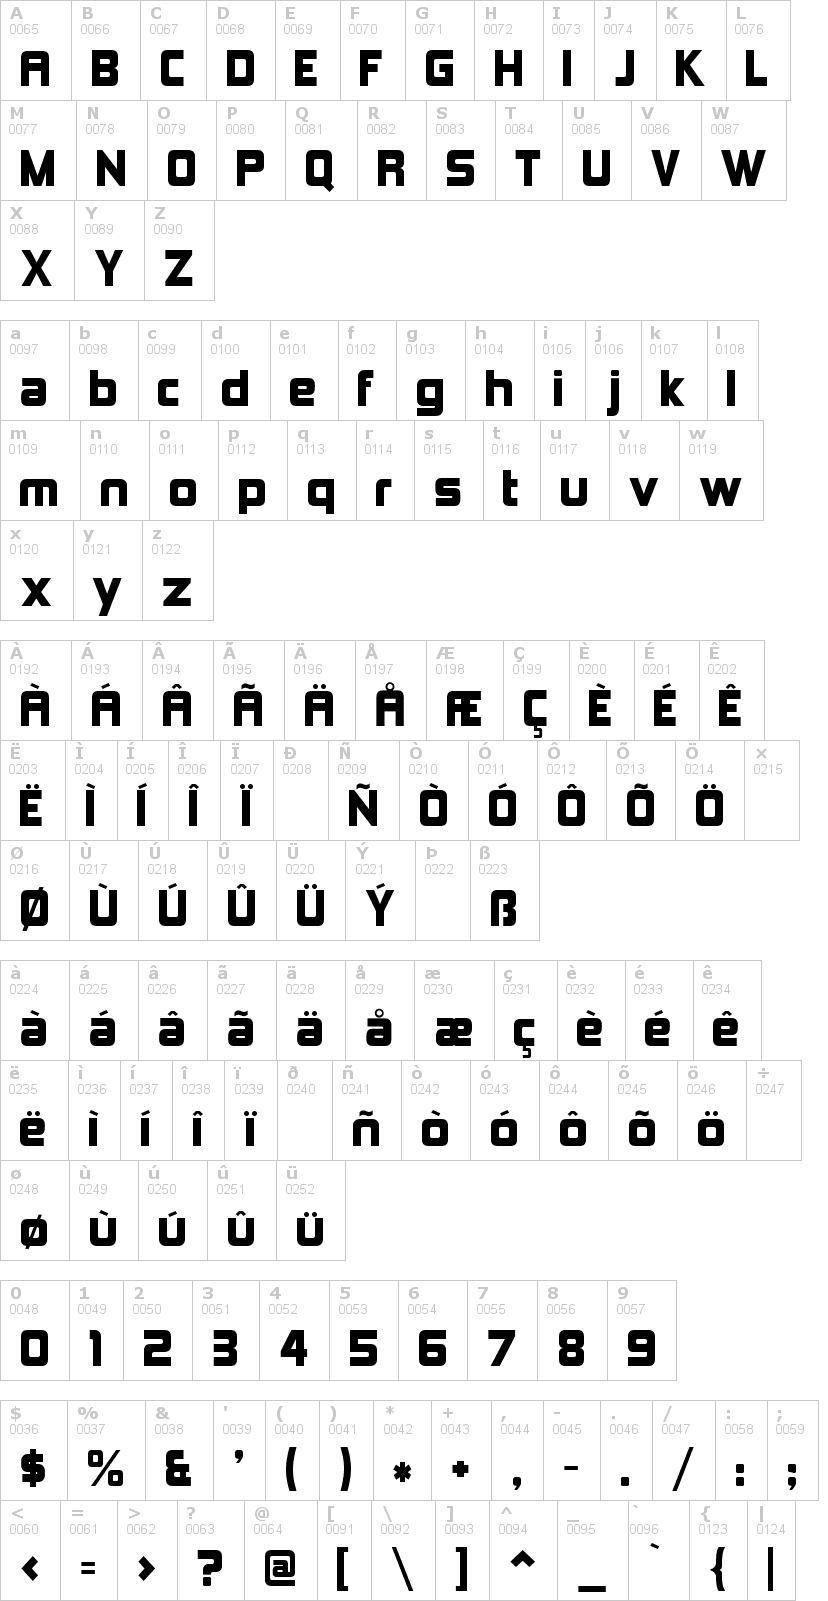 Lettere dell'alfabeto del font kimberley con le quali è possibile realizzare adesivi prespaziati